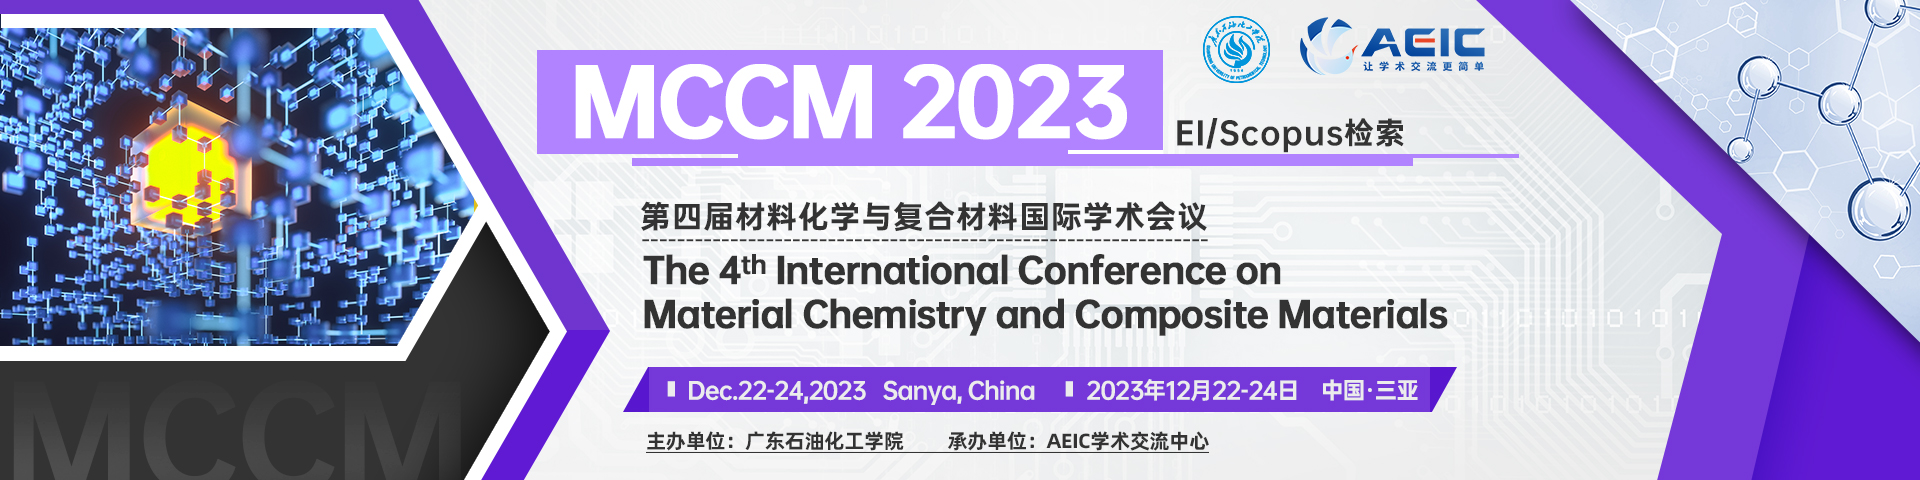 12月三亚-MCCM-2023-艾思平台.jpg